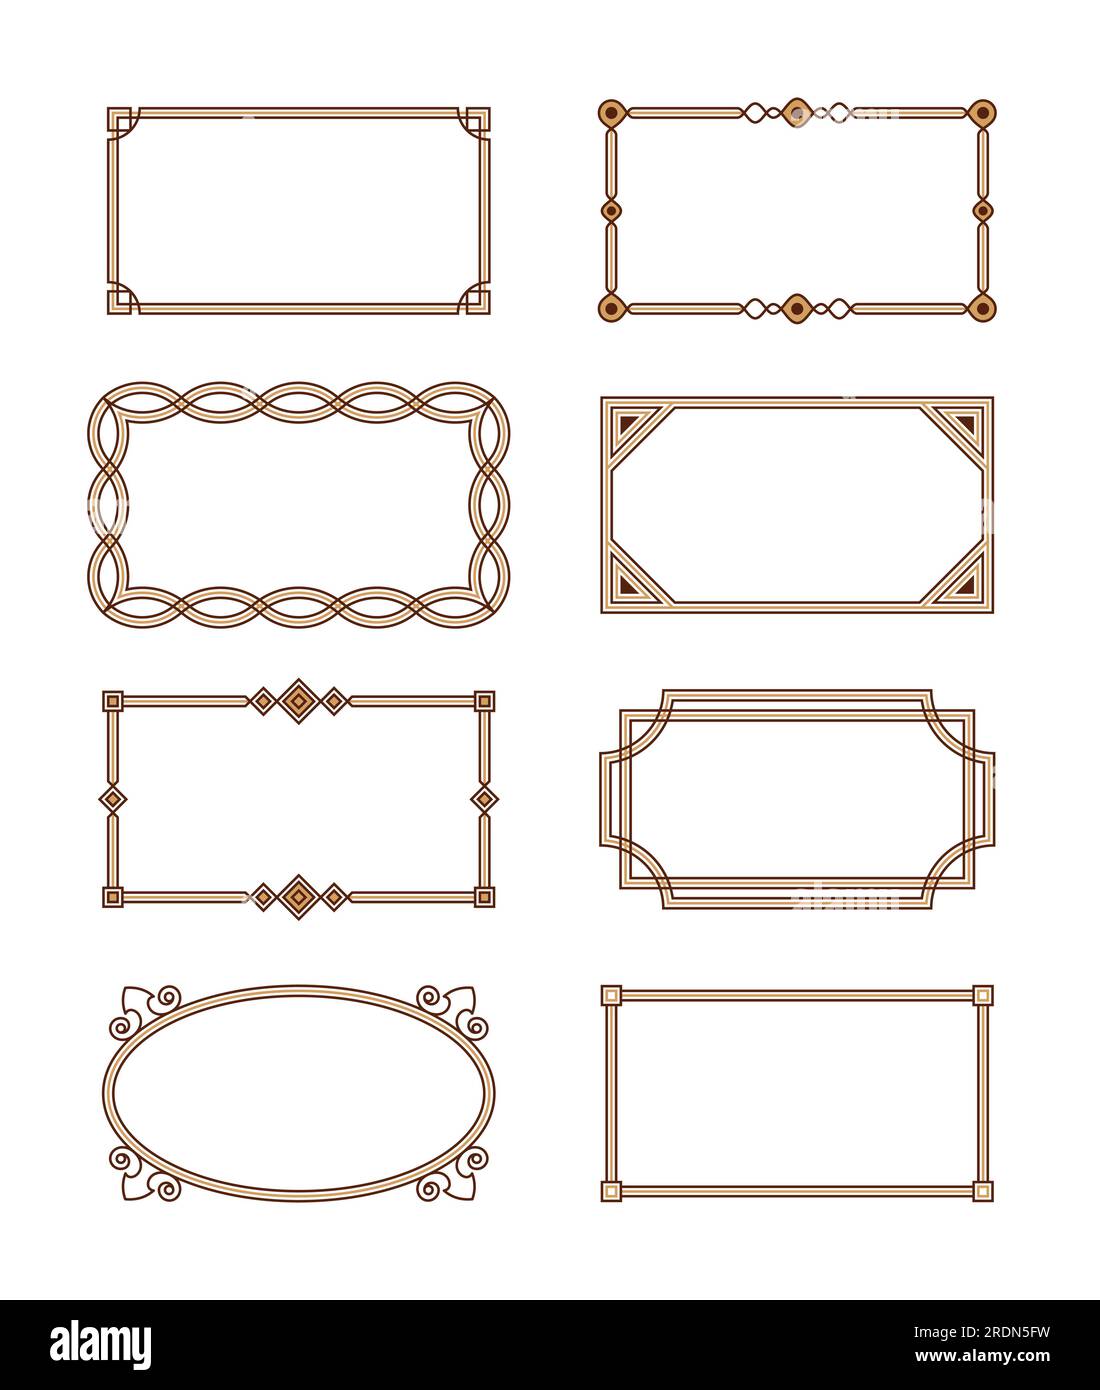 Bordi in stile classico. Set di bordi vettoriali in stile classico. Combinazione di strisce ed elementi decorativi. Illustrazione Vettoriale